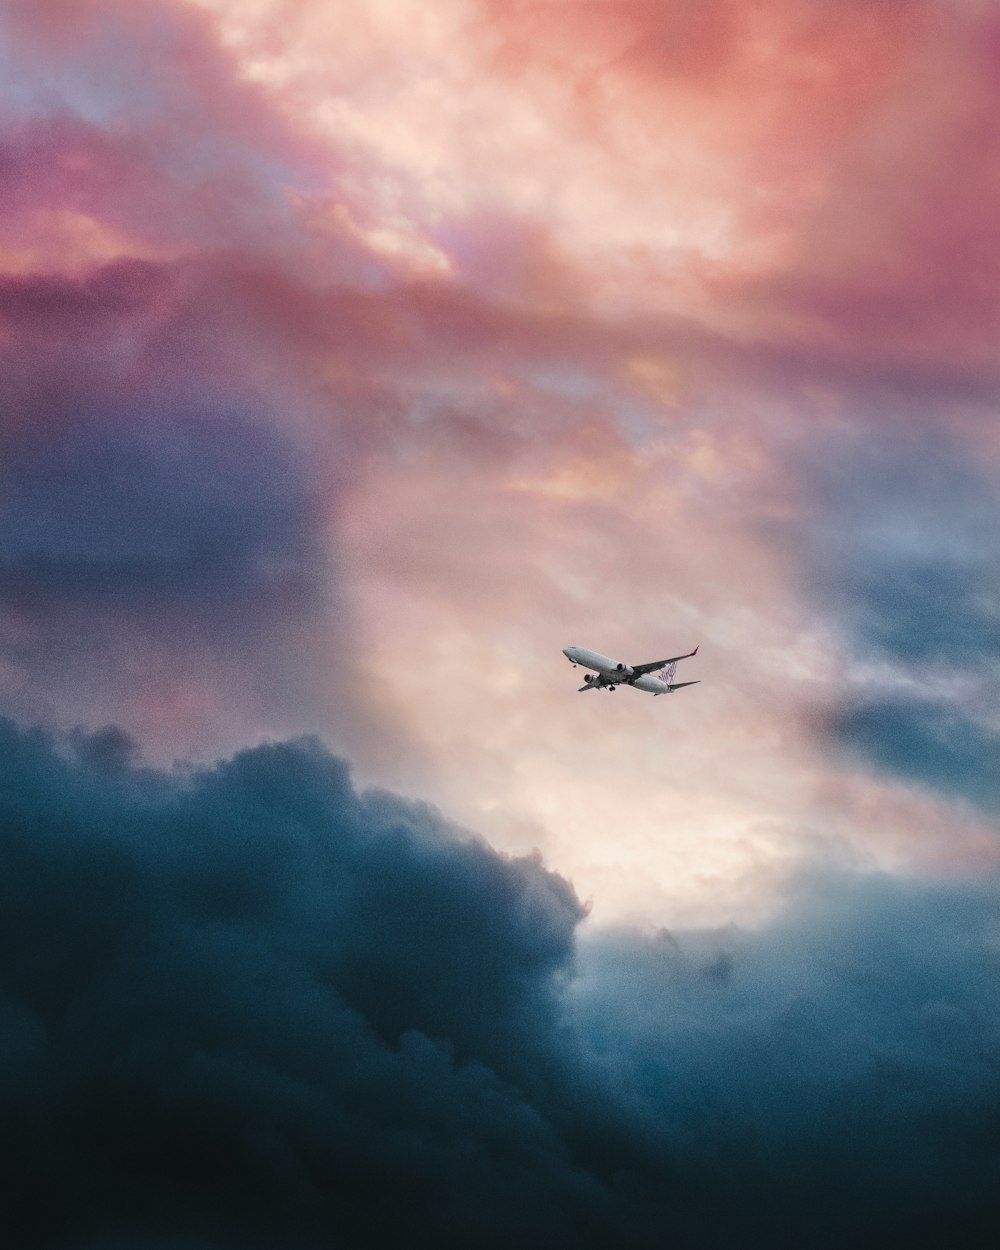 회색 구름 위를 날고 있는 하얀 비행기